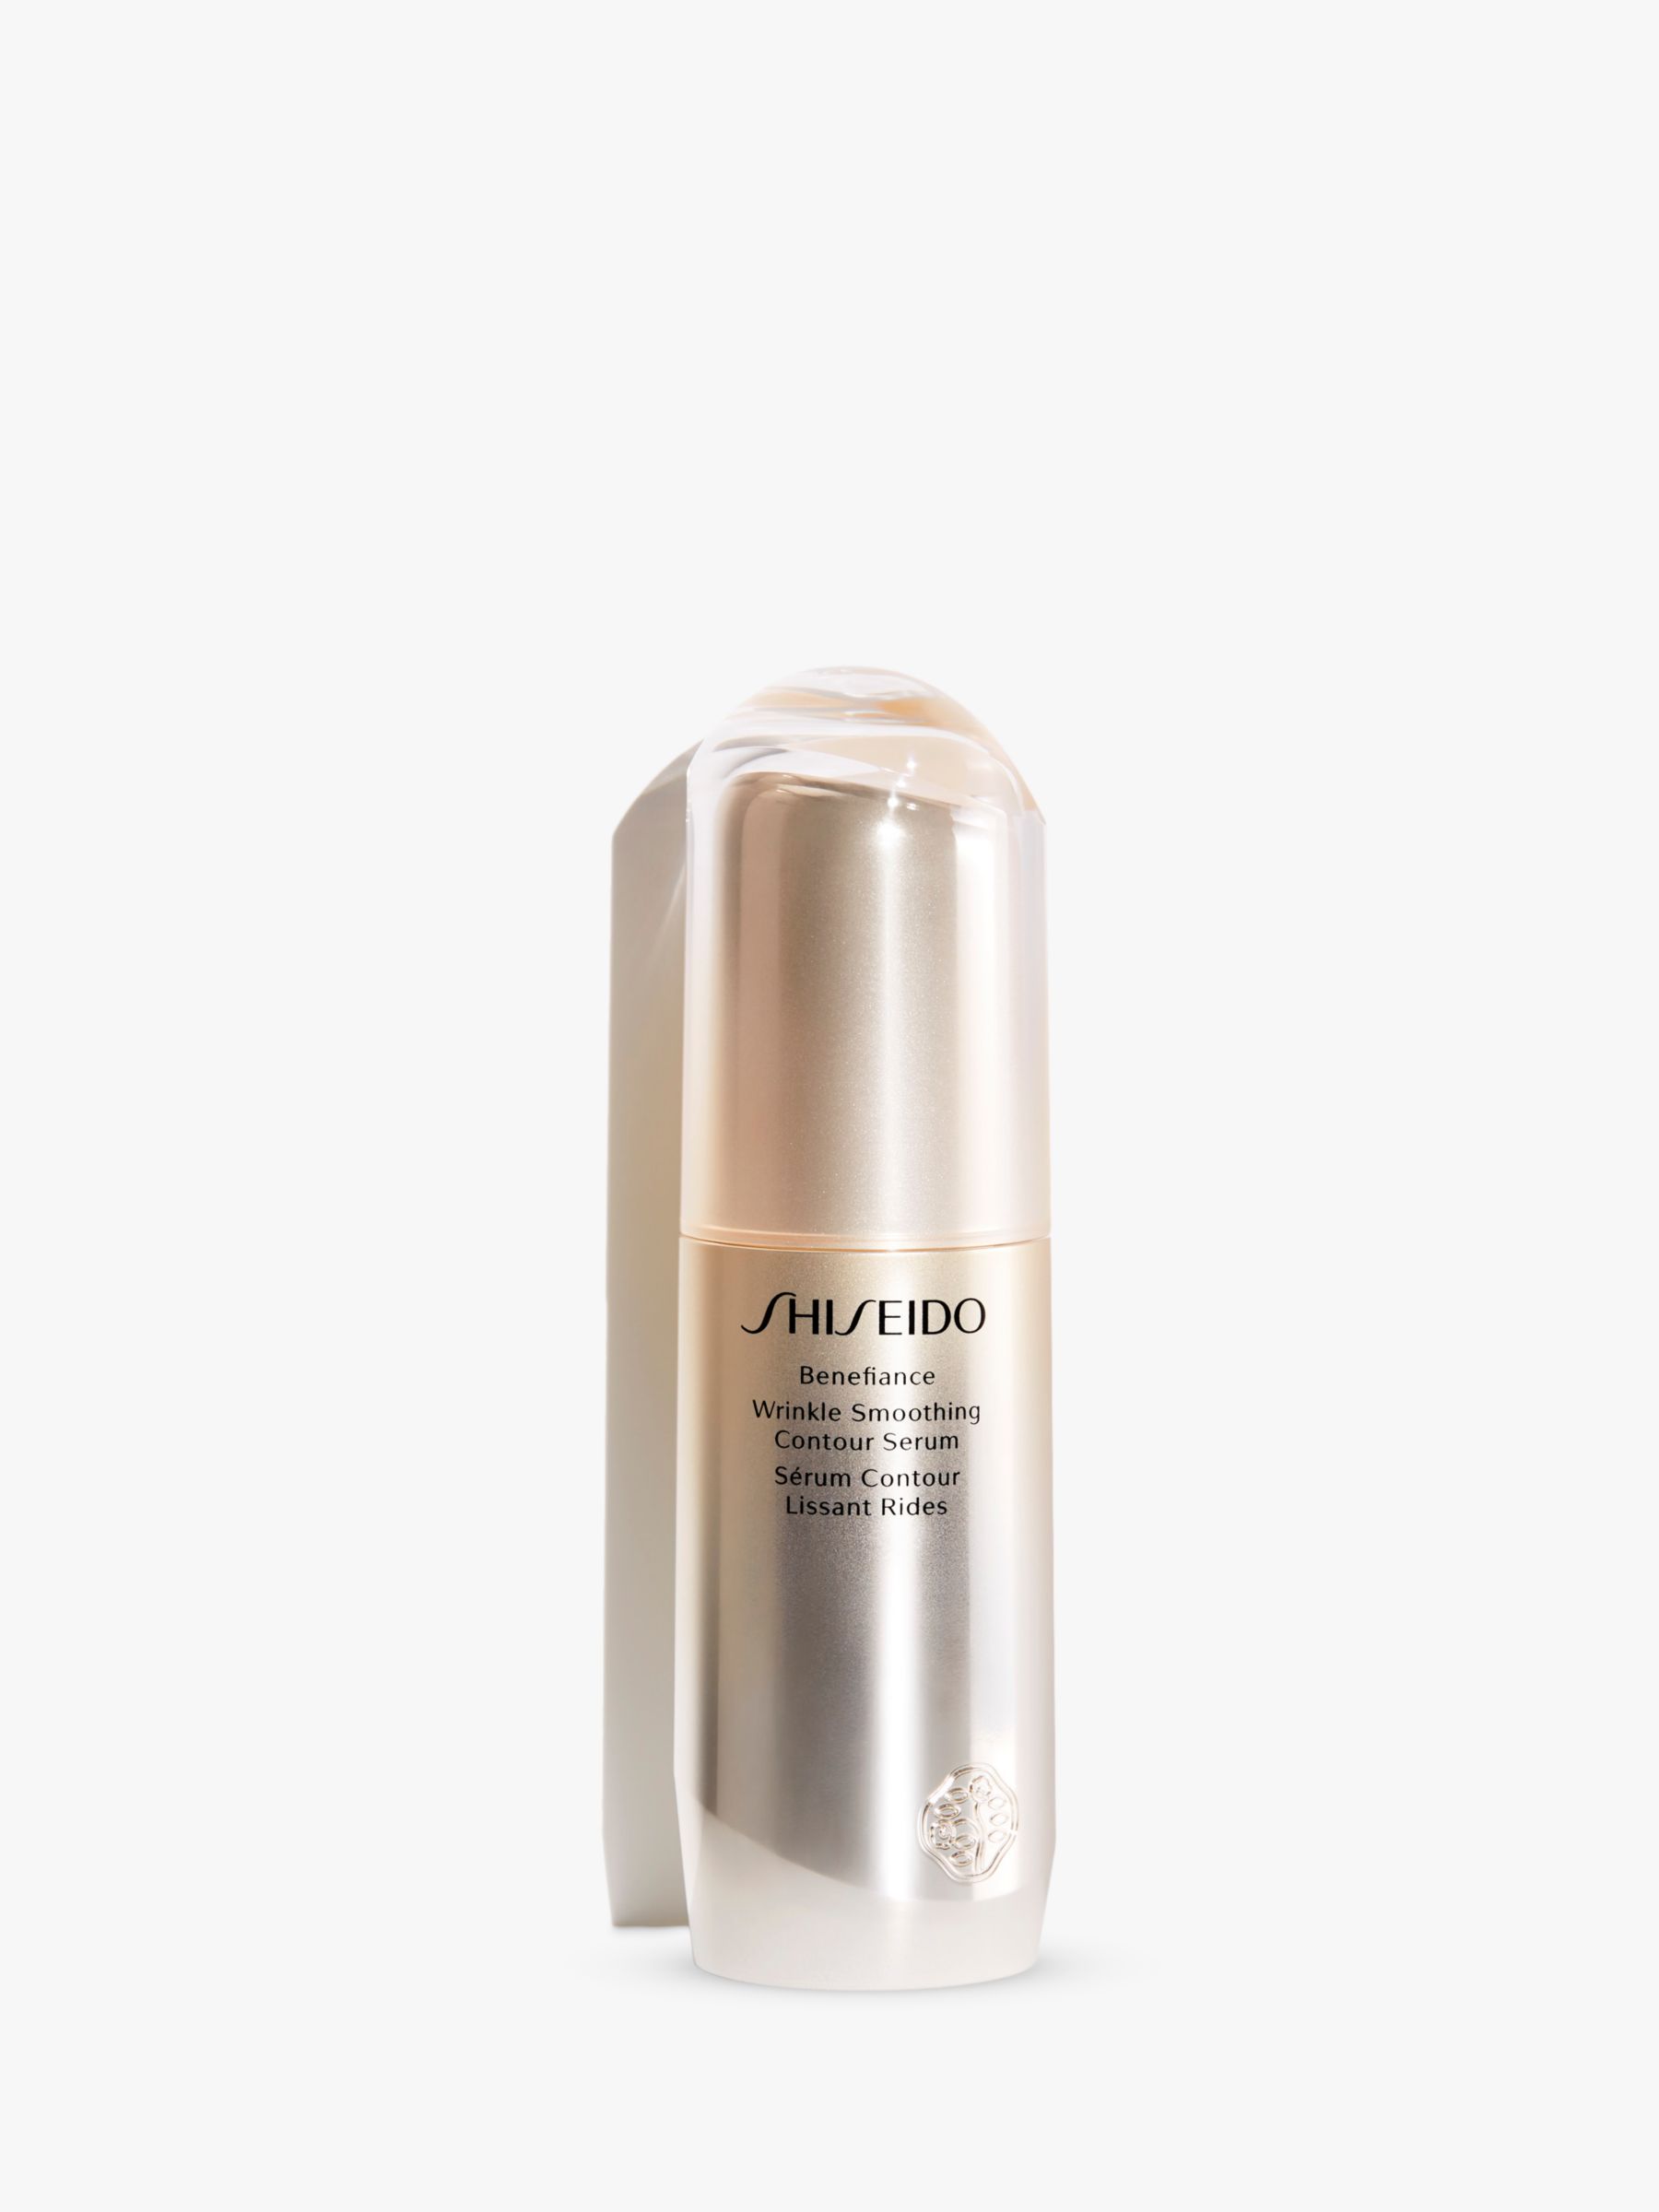 Shiseido Benefiance Wrinkle Smoothing Contour Serum, 30ml 1